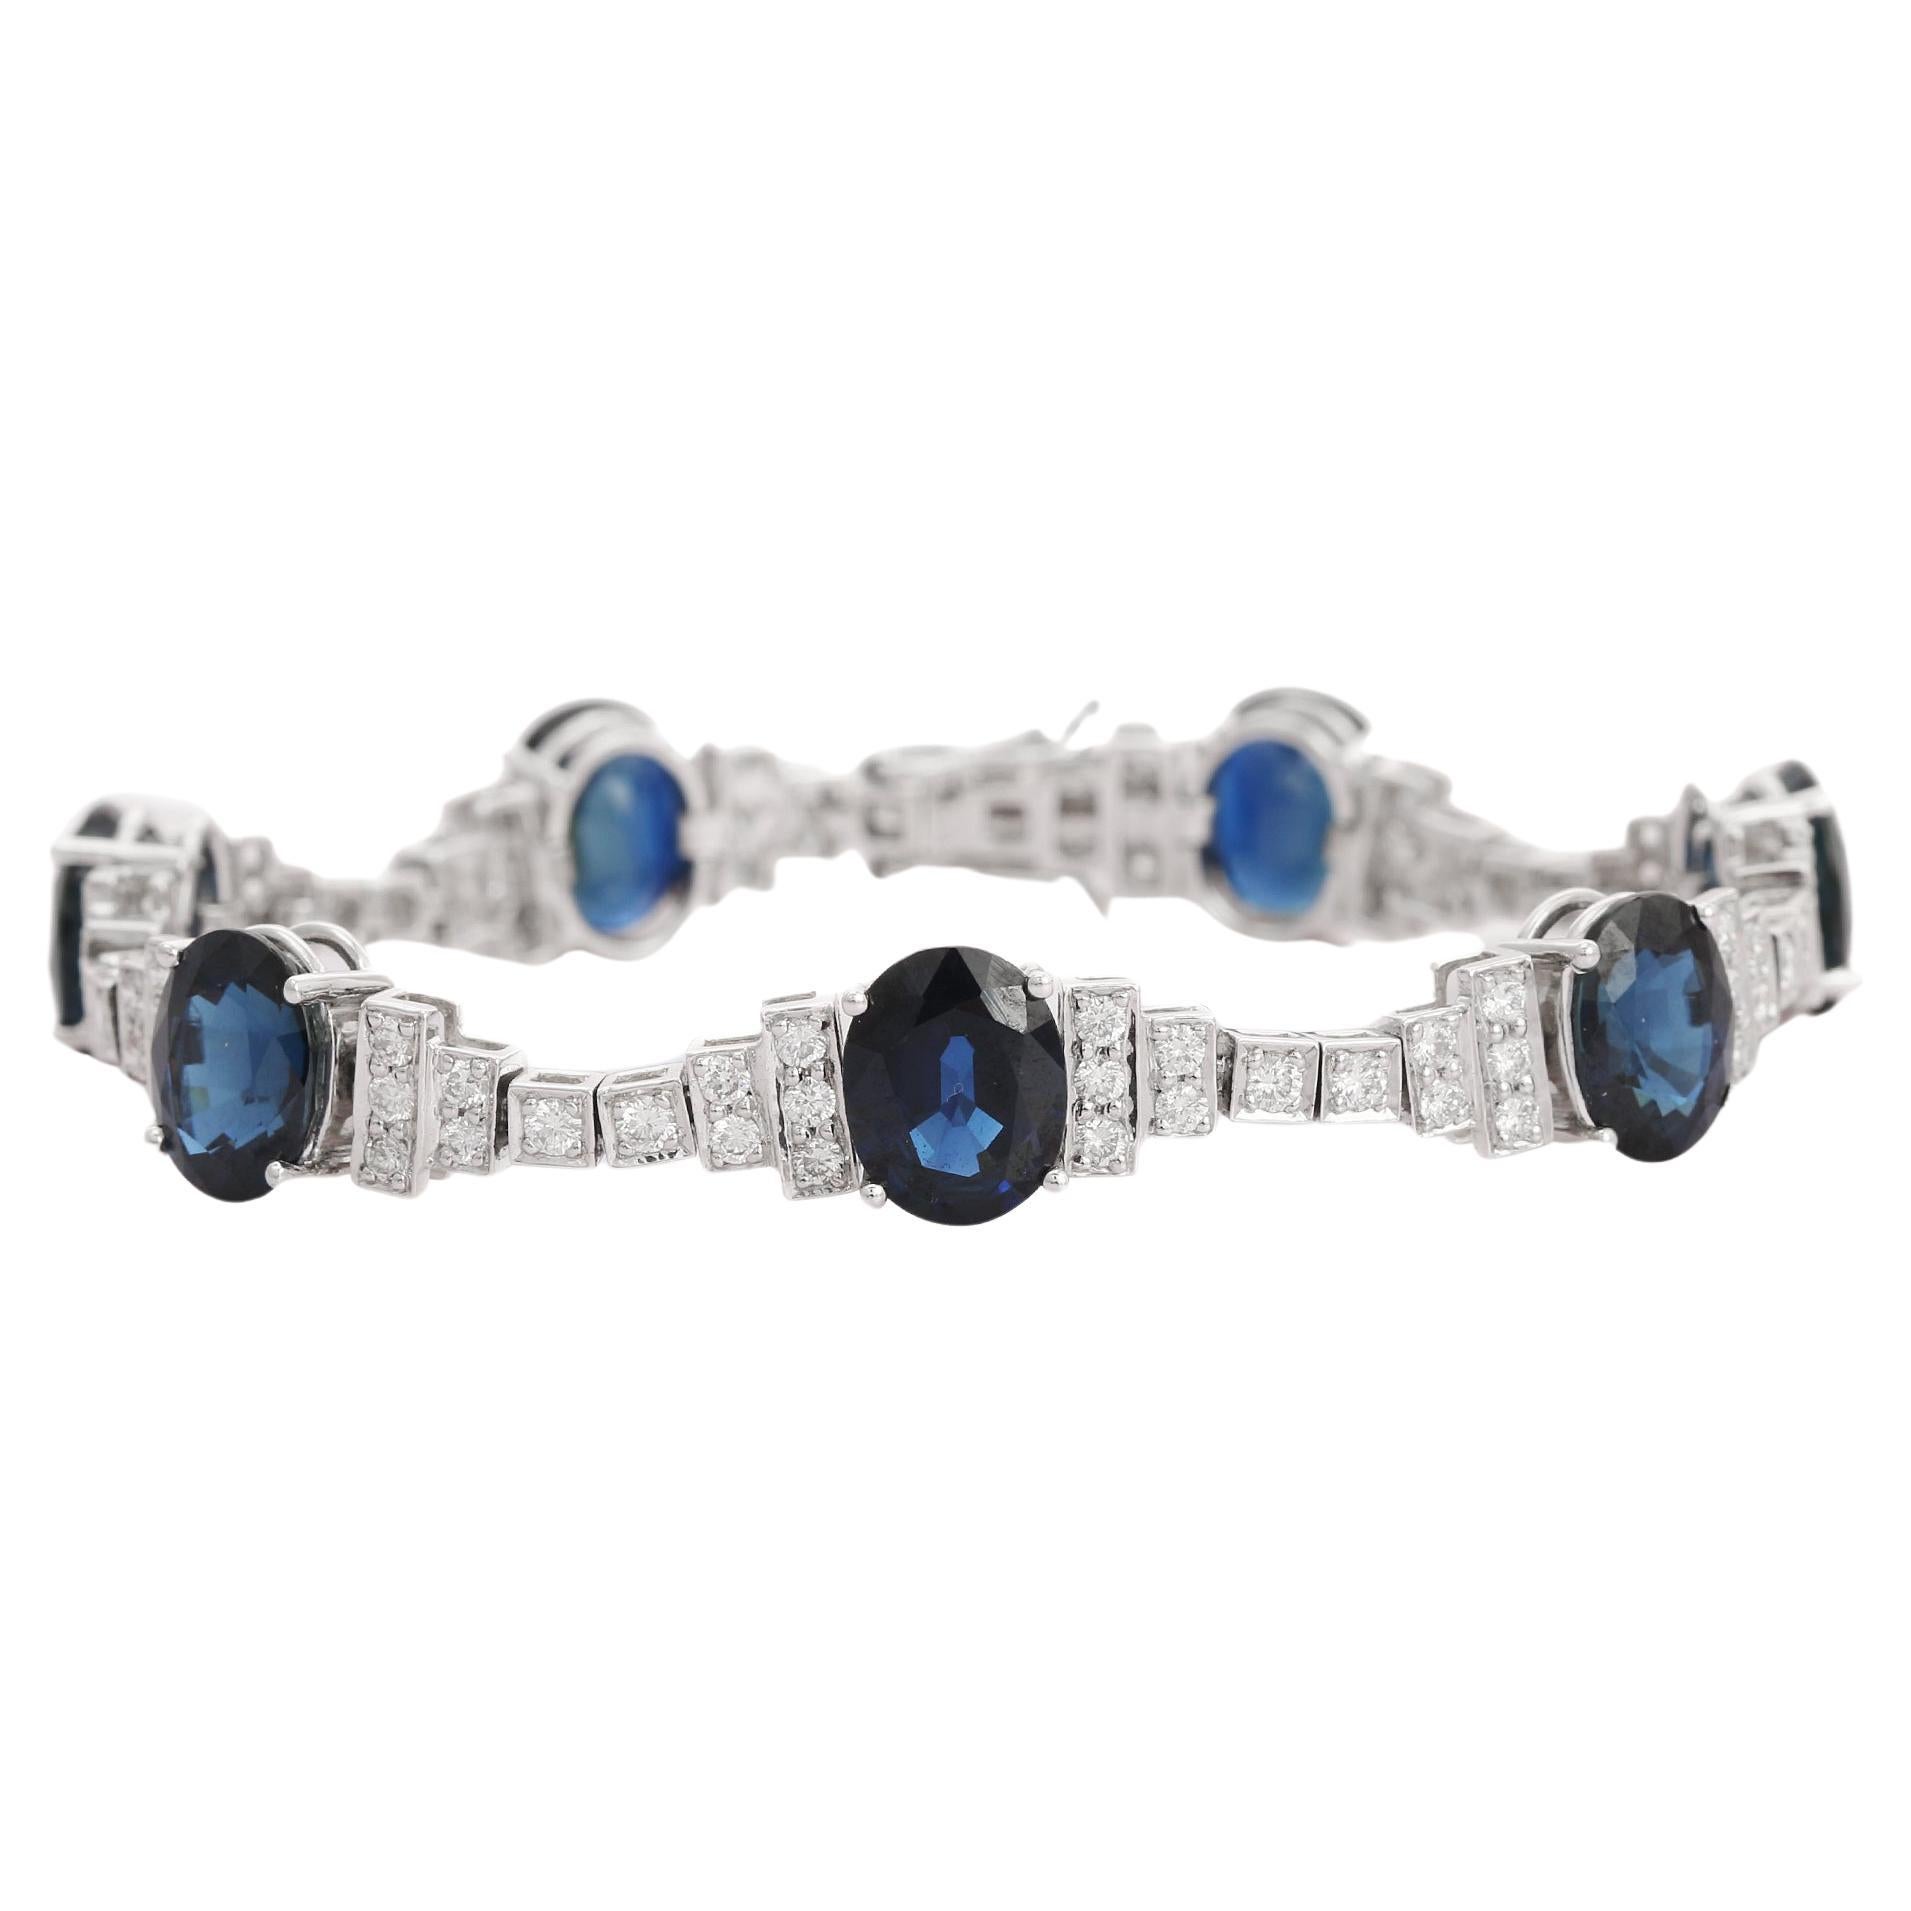 Bracelet tennis de mariage en or blanc 18 carats et saphir bleu 24 carats avec diamants